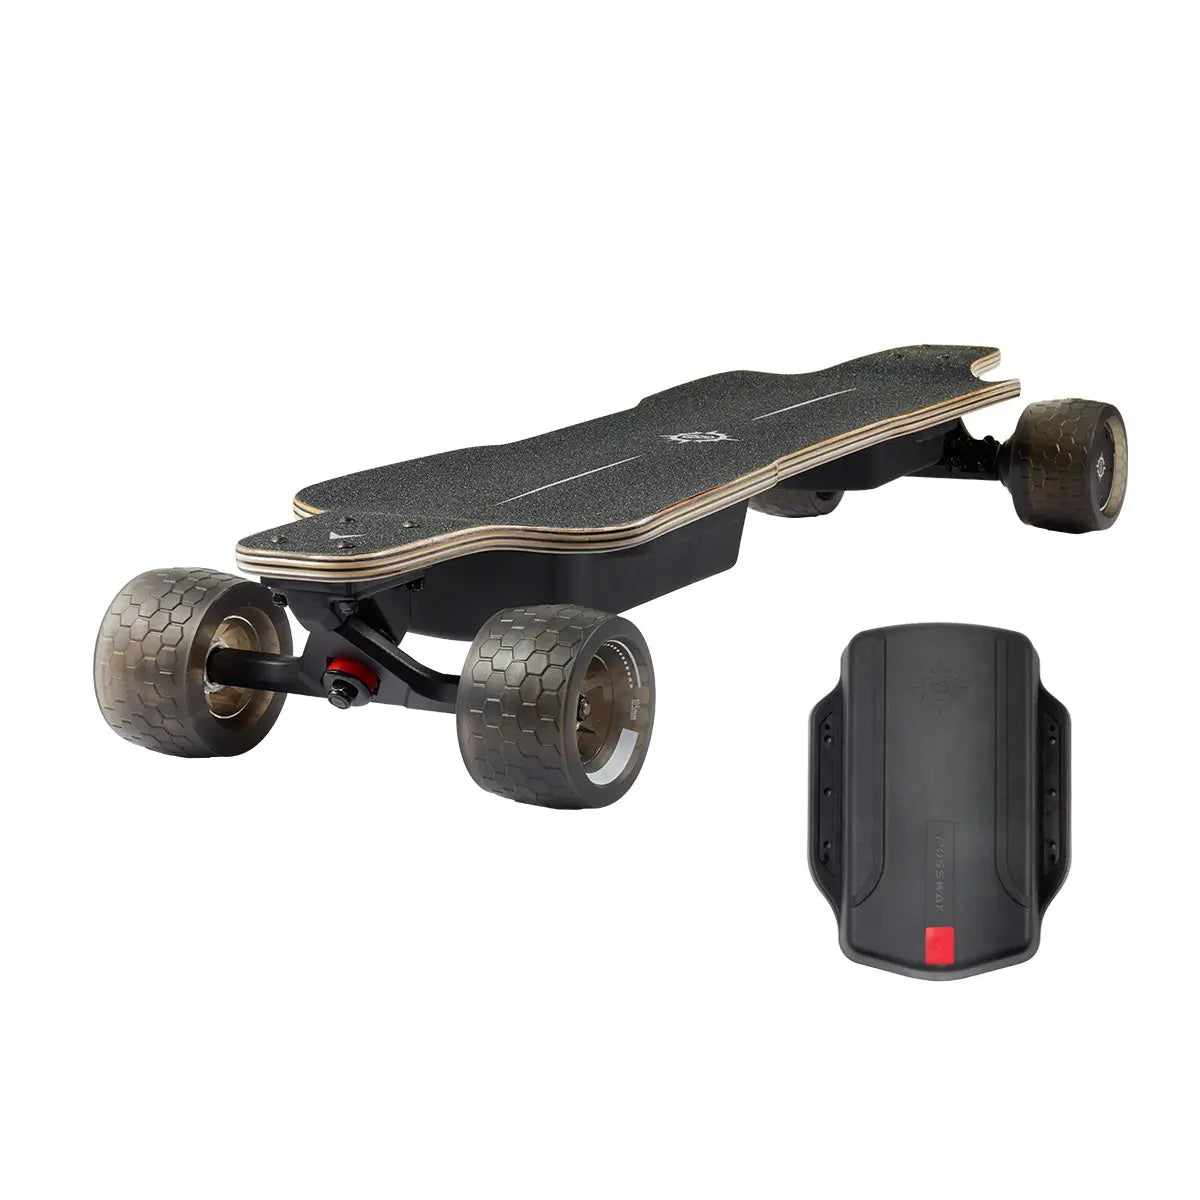 Possway T3 Electric Skateboard 37 longboard with Shock-Absorbing Wheels possway 499.00